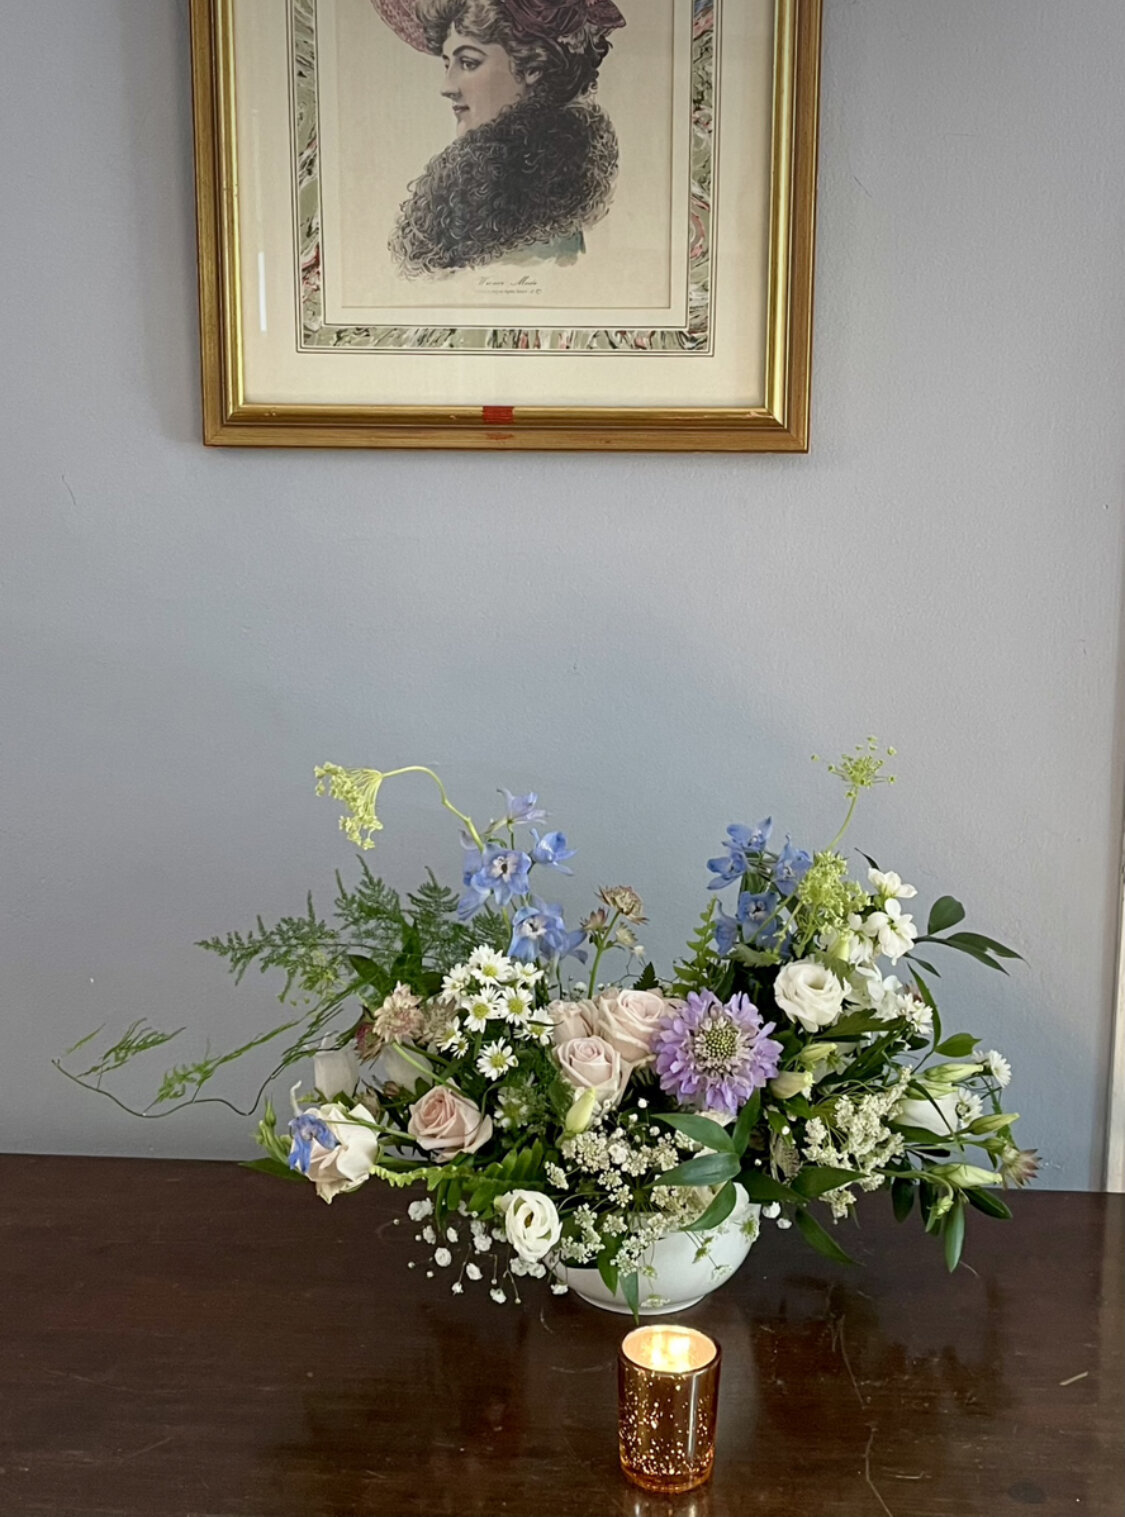 Woodsy textured wedding arrangement by Prose Florals, Boston wedding florist